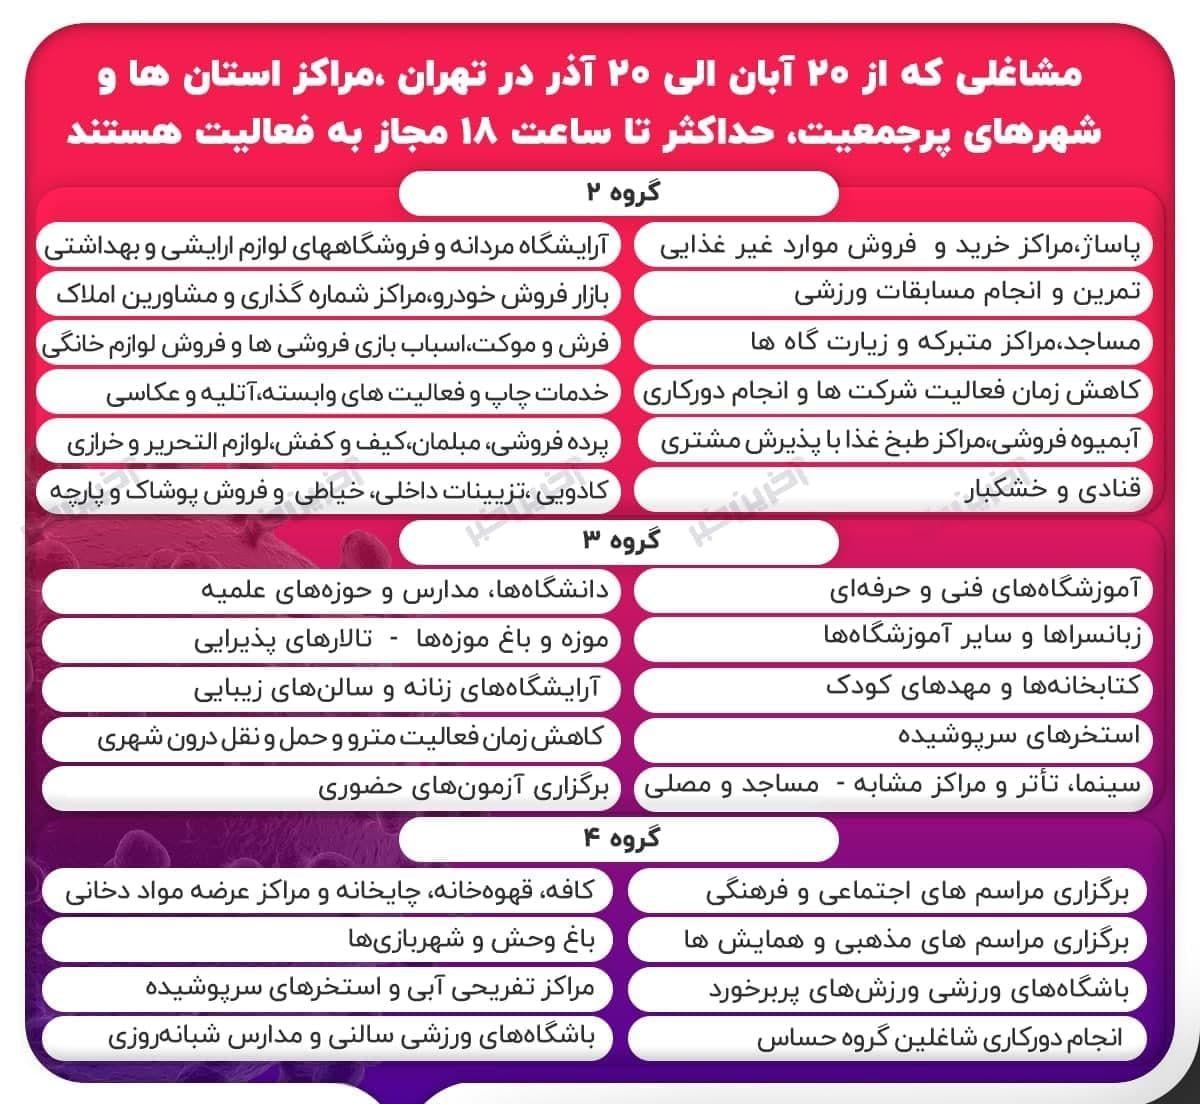 لیست مشاغلی که حداکثر تا ساعت ۱۸ مجاز تهران _ مراکز استان ها و شهرهای پرجمعیت